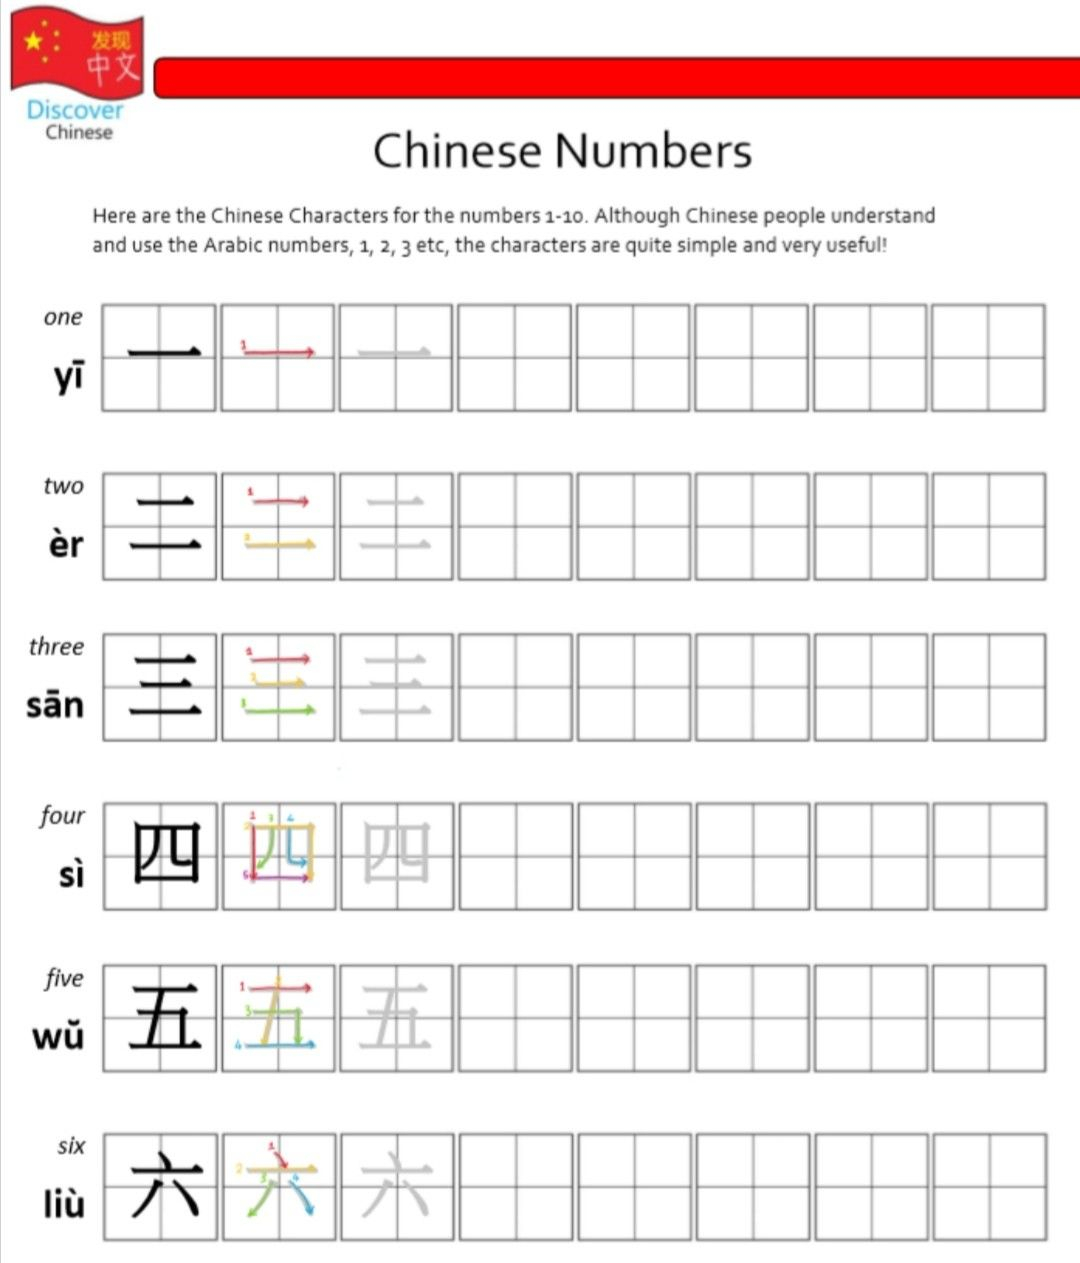 Chinese Numbers 1-10 Worksheet In 2020 | Numbers 1 10